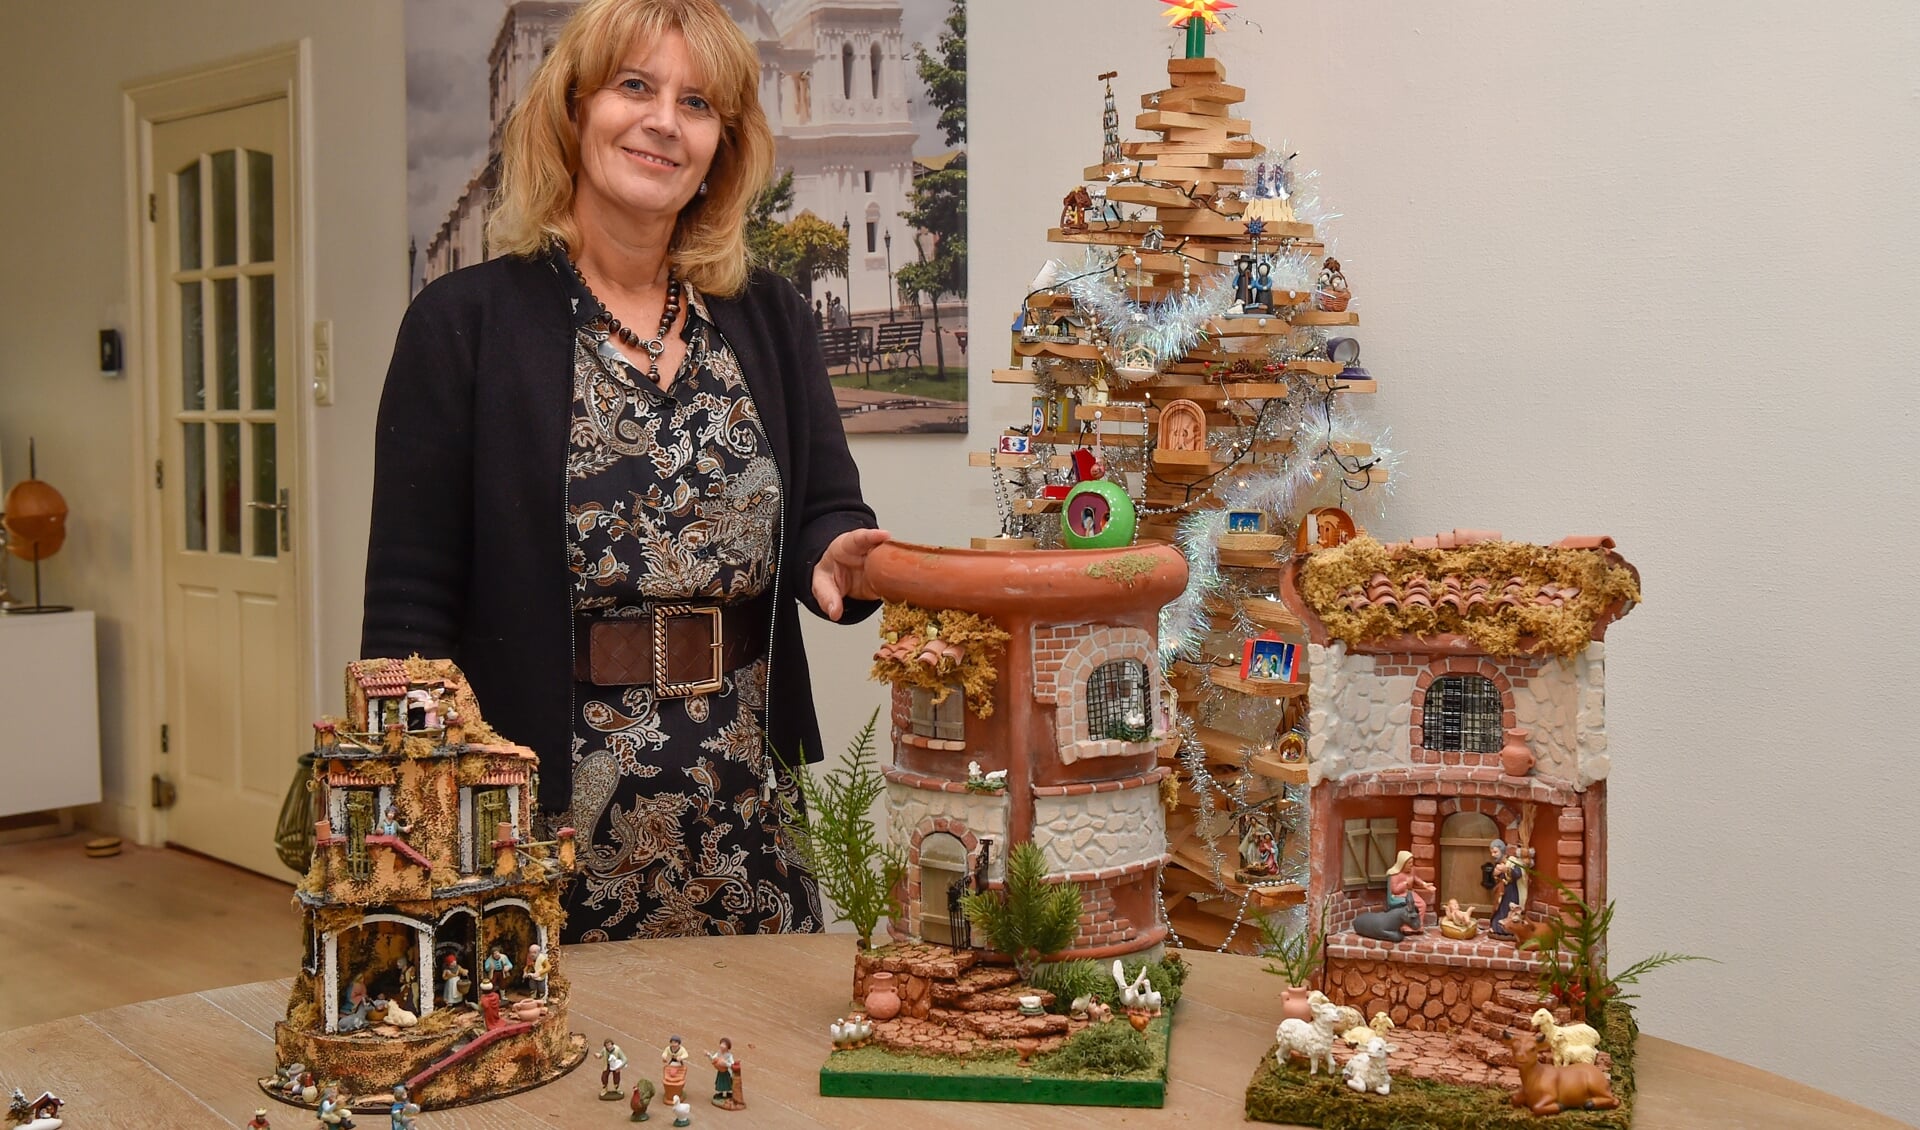 Made in Holland. Gerdie Bade-van der Weerd verzamelt miniatuur kerststallen. De grootste uit haar collectie is er één die ze thuis maakte, toen corona het reizen sterk beperkte.